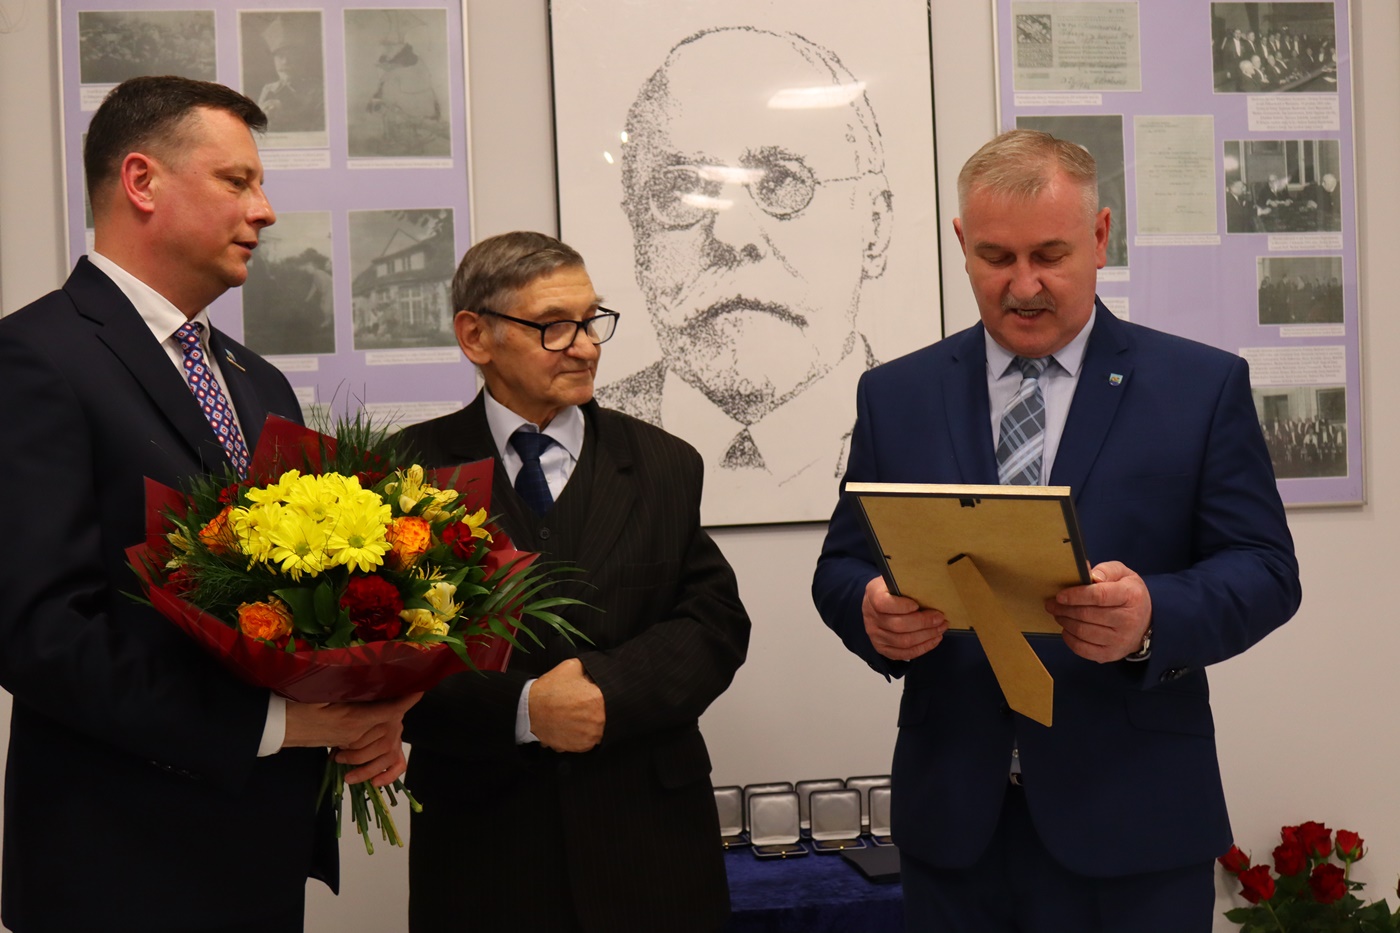 Tadeusz Sasin został honorowym Obywatelem Gminy Tłuszcz